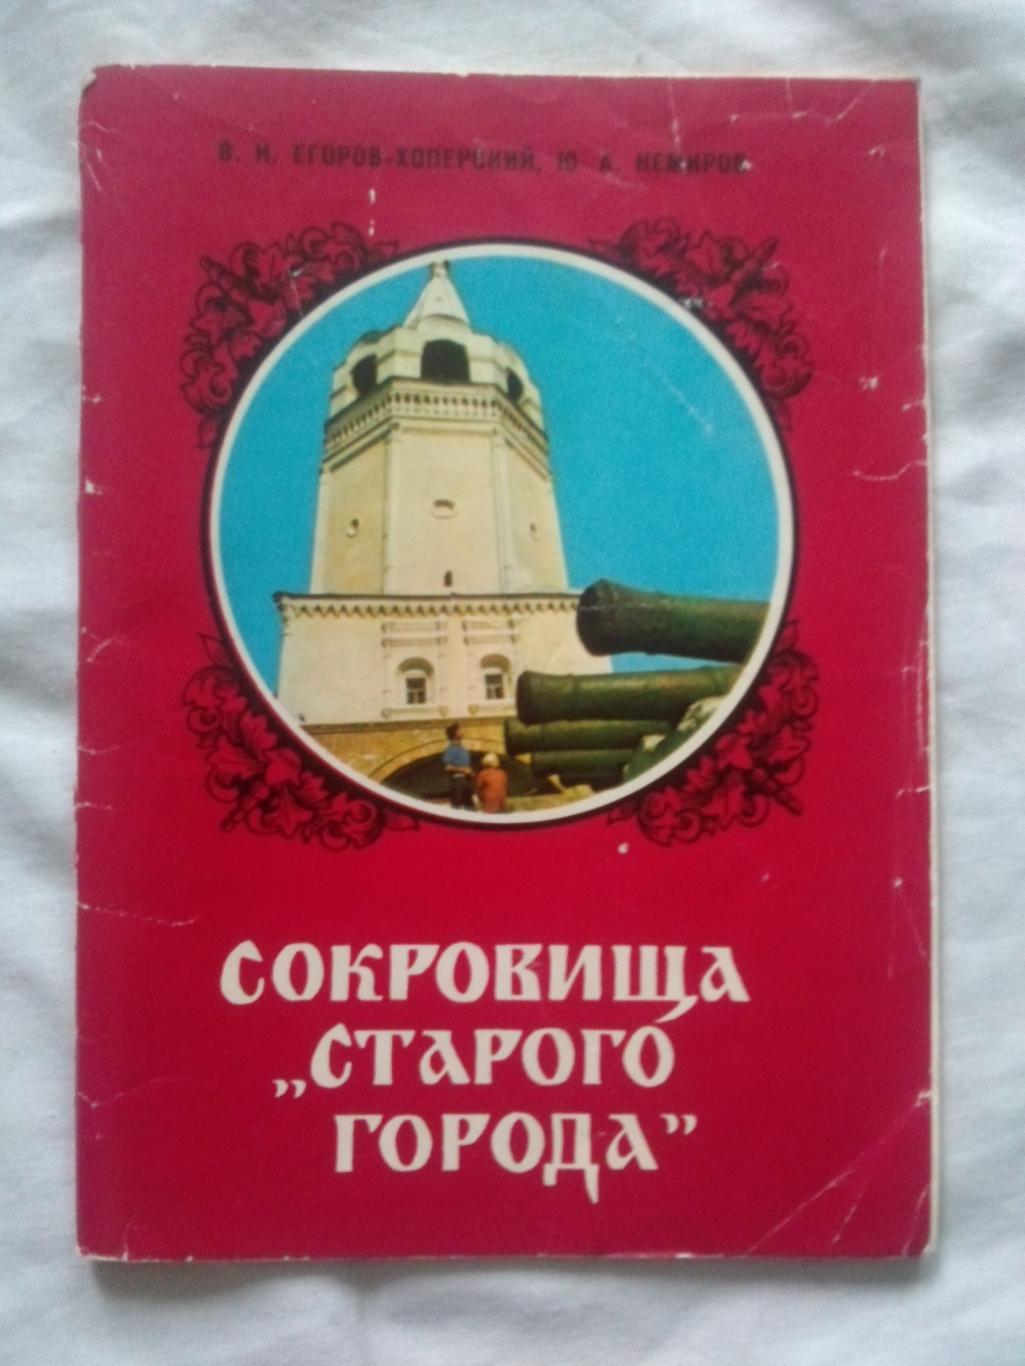 Путеводитель : Сокровища Старого города 1980 г. (Старочеркасск , казаки)